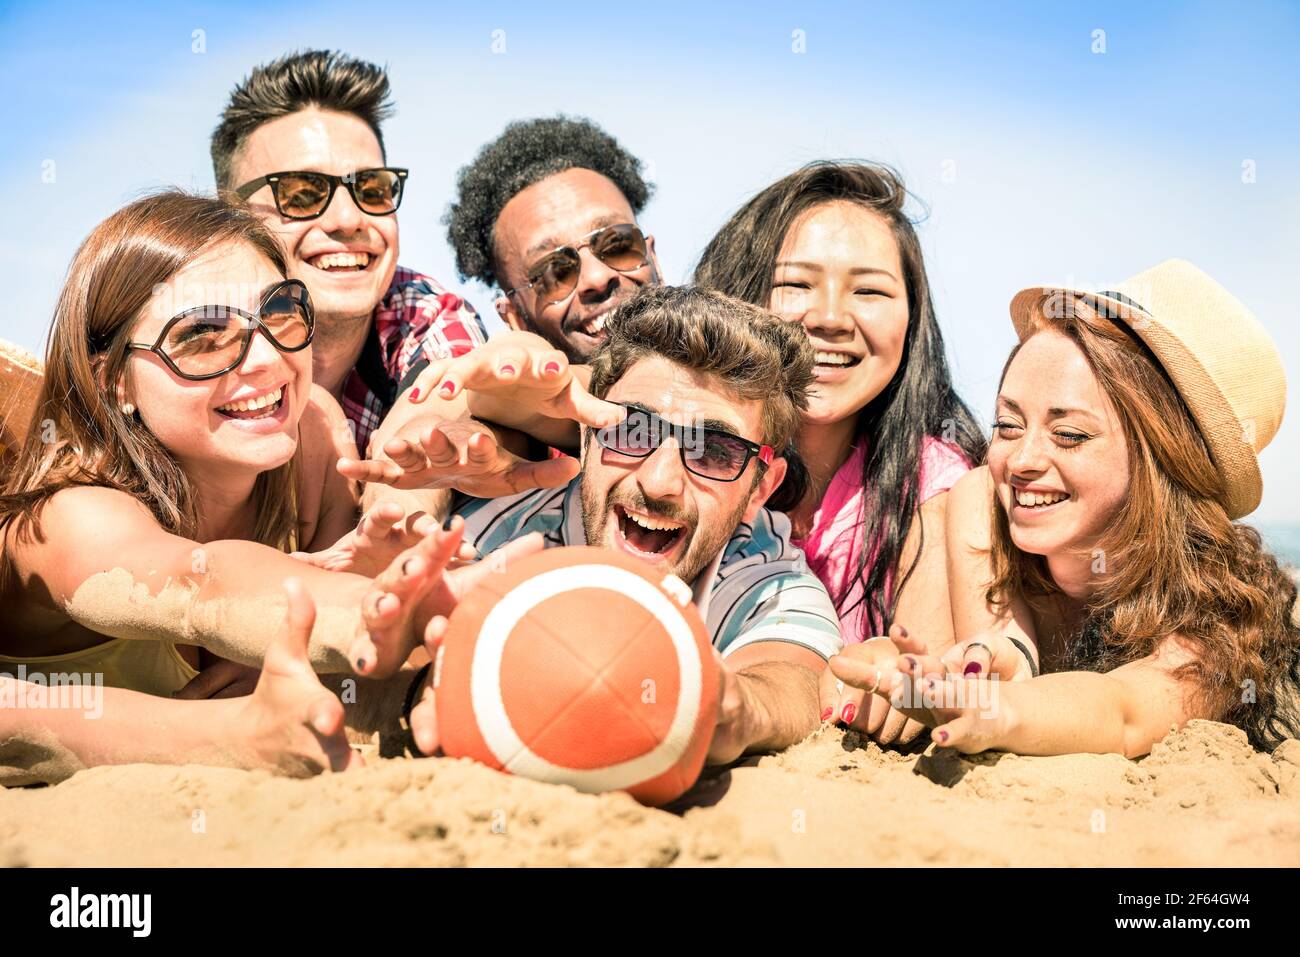 Groupe d'amis heureux multiraciaux ayant du plaisir à des jeux de plage - concept international de joie d'été et d'amitié multi-ethnique ensemble Banque D'Images